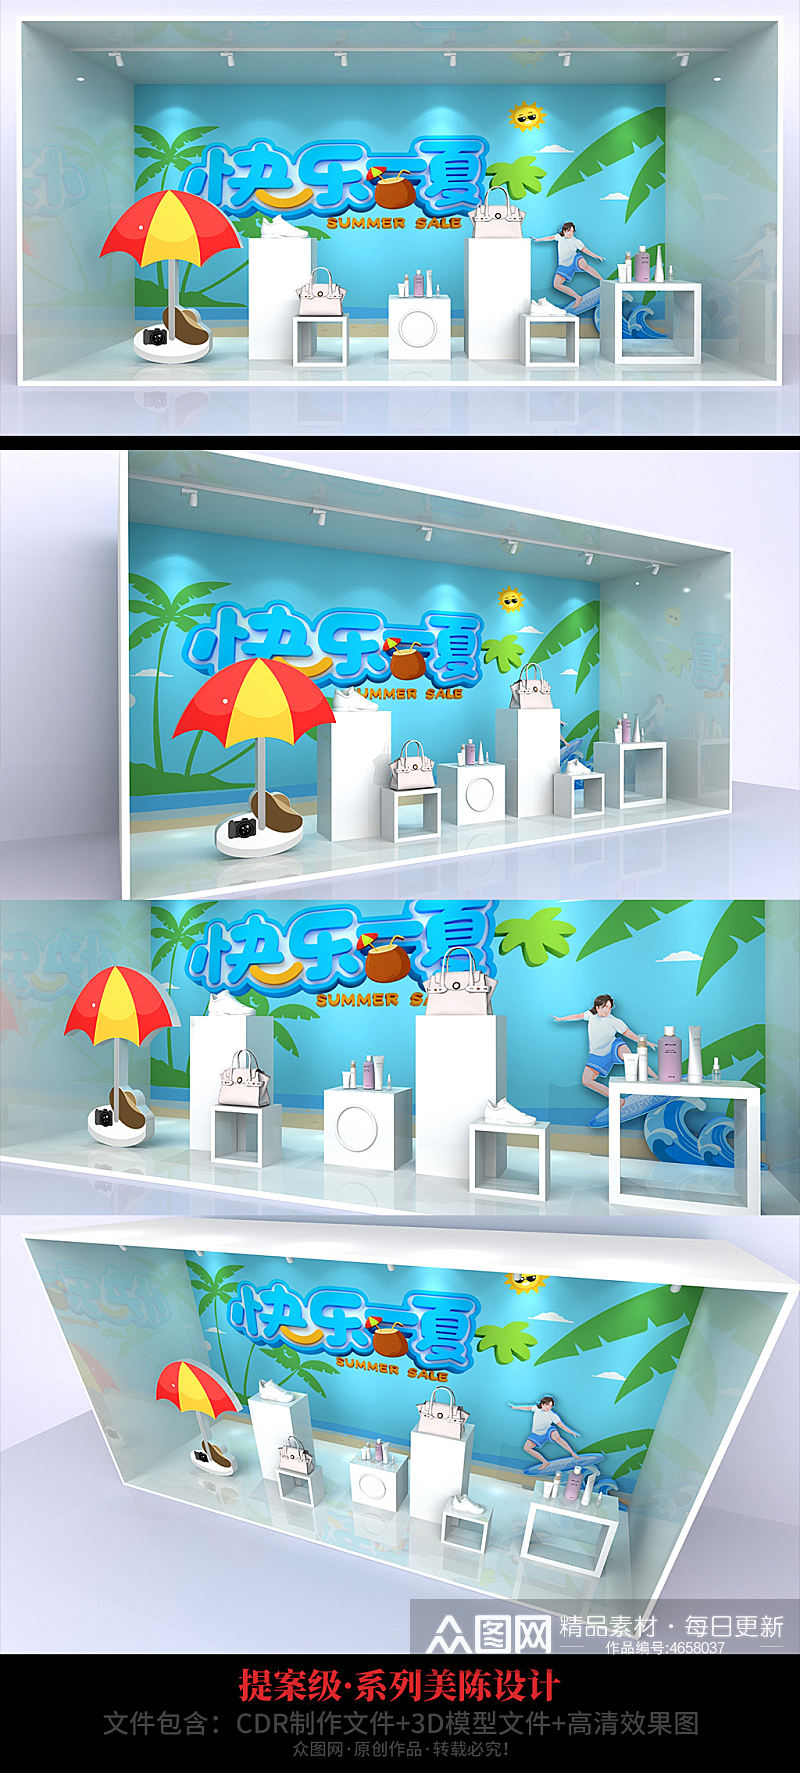 夏季蓝色沙滩主题快乐一夏商场橱窗美陈素材